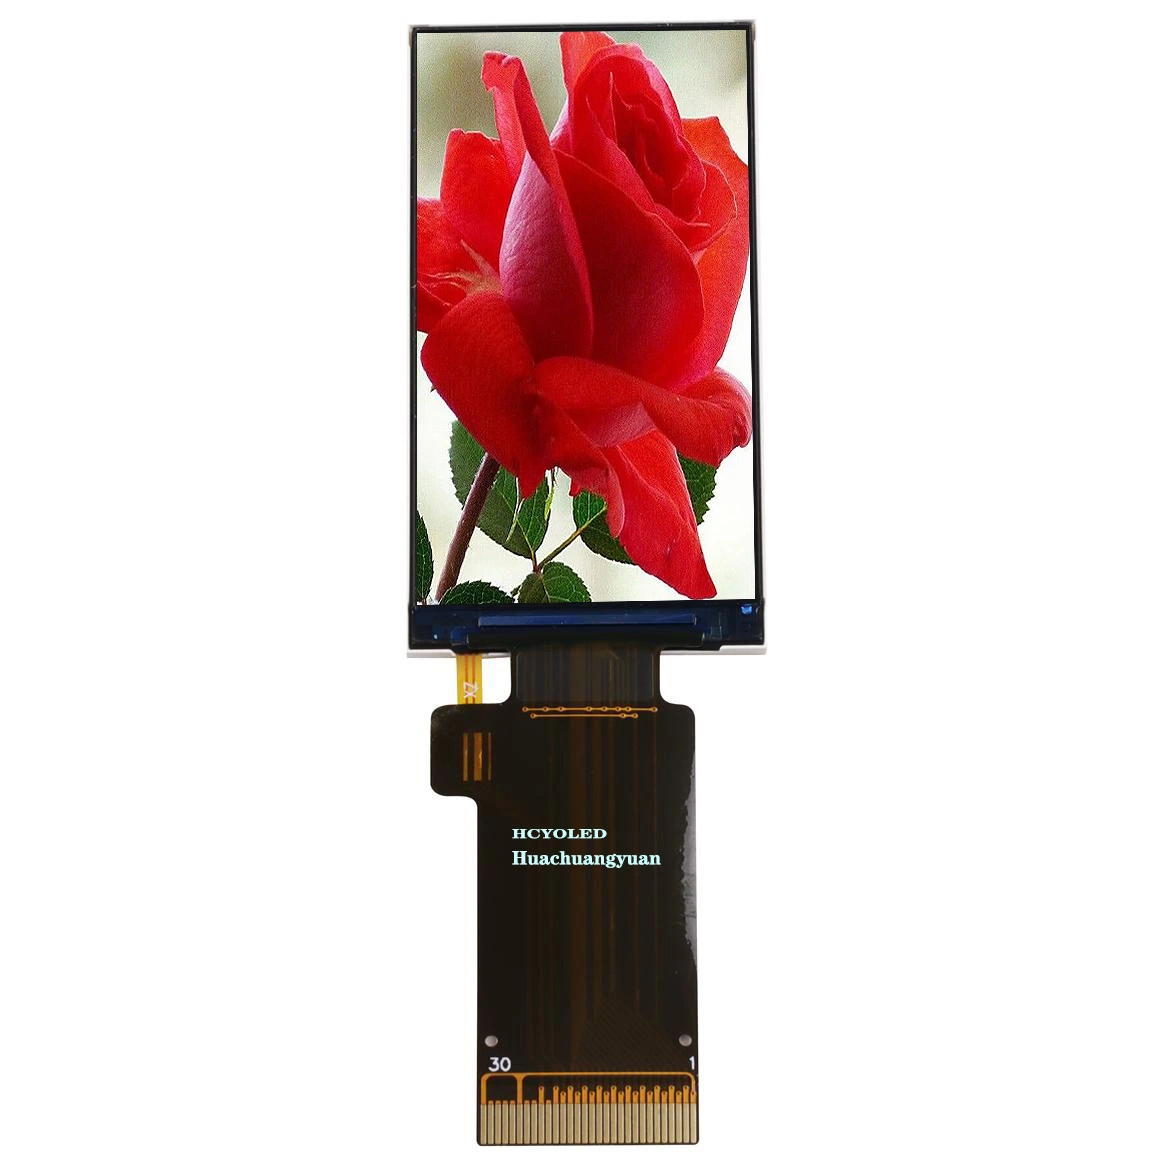 1,9 pouces multifonction 170x320 pixels LCD TFT tactile couleur de l'écran